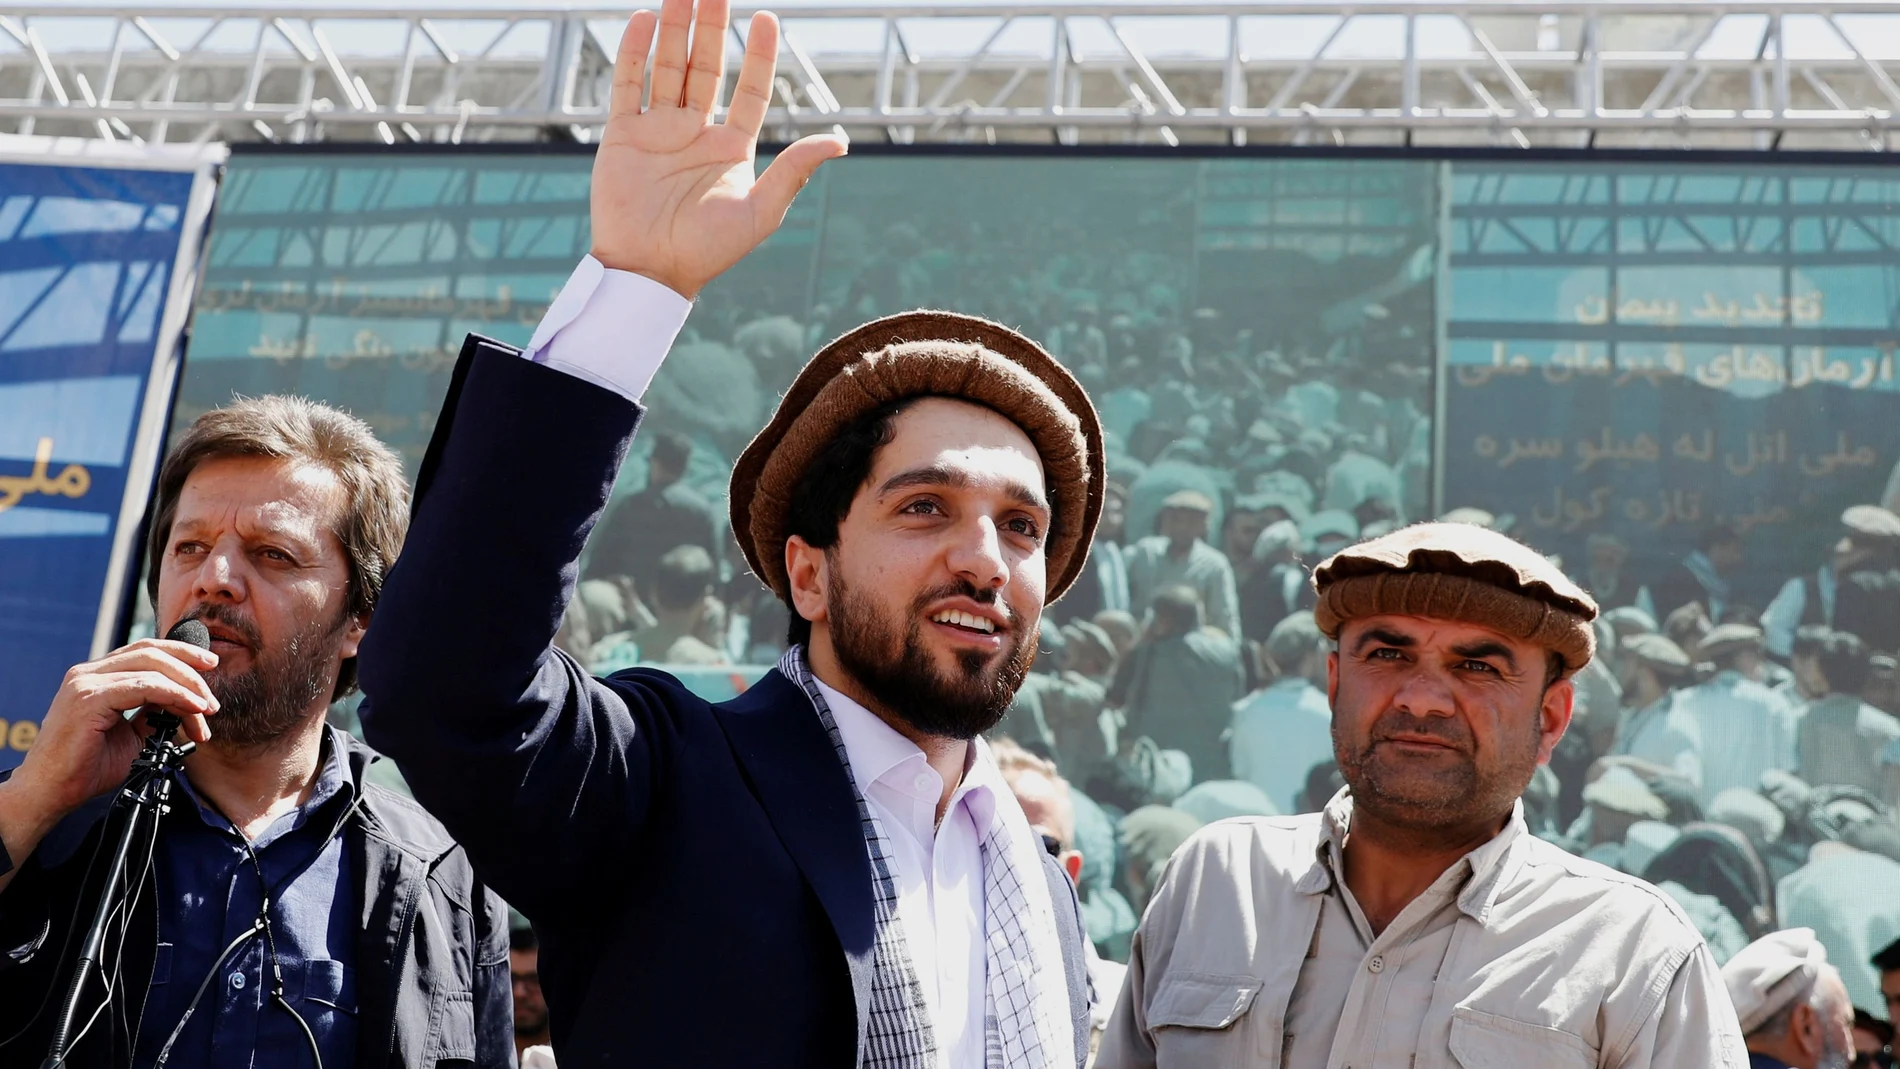 Massoud es hijo de Ahmad Shah Massoud, uno de los principales líderes de la resistencia antisoviética de Afganistán en la década de 1980